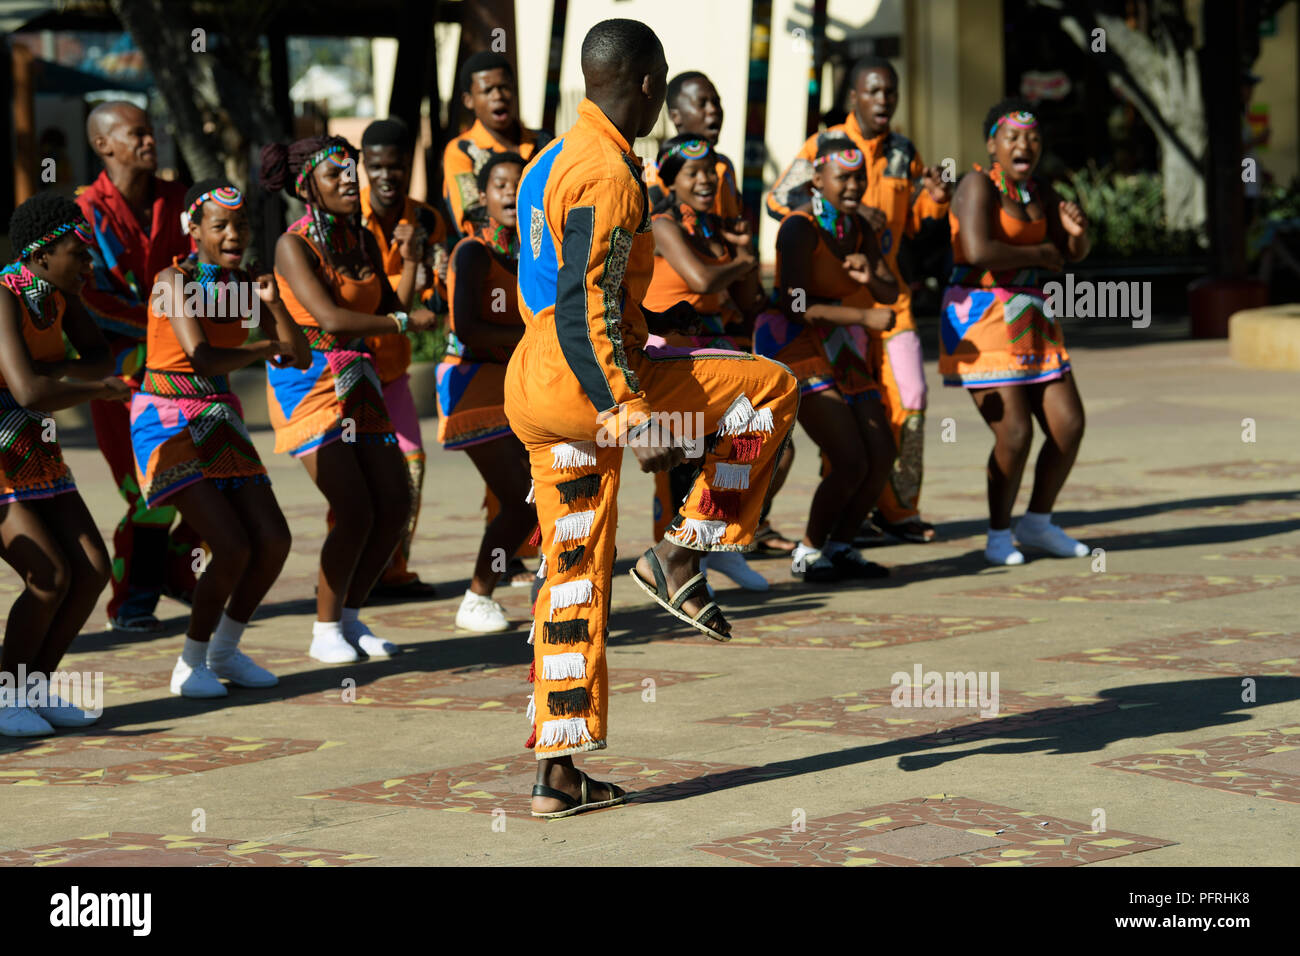 Hohe Stepping in Zulu traditionelle Kleidung der führenden Gruppe junger Straßenkünstler unter zeigen Touristen zu unterhalten, Durban, KwaZulu-Natal, ZAR Stockfoto